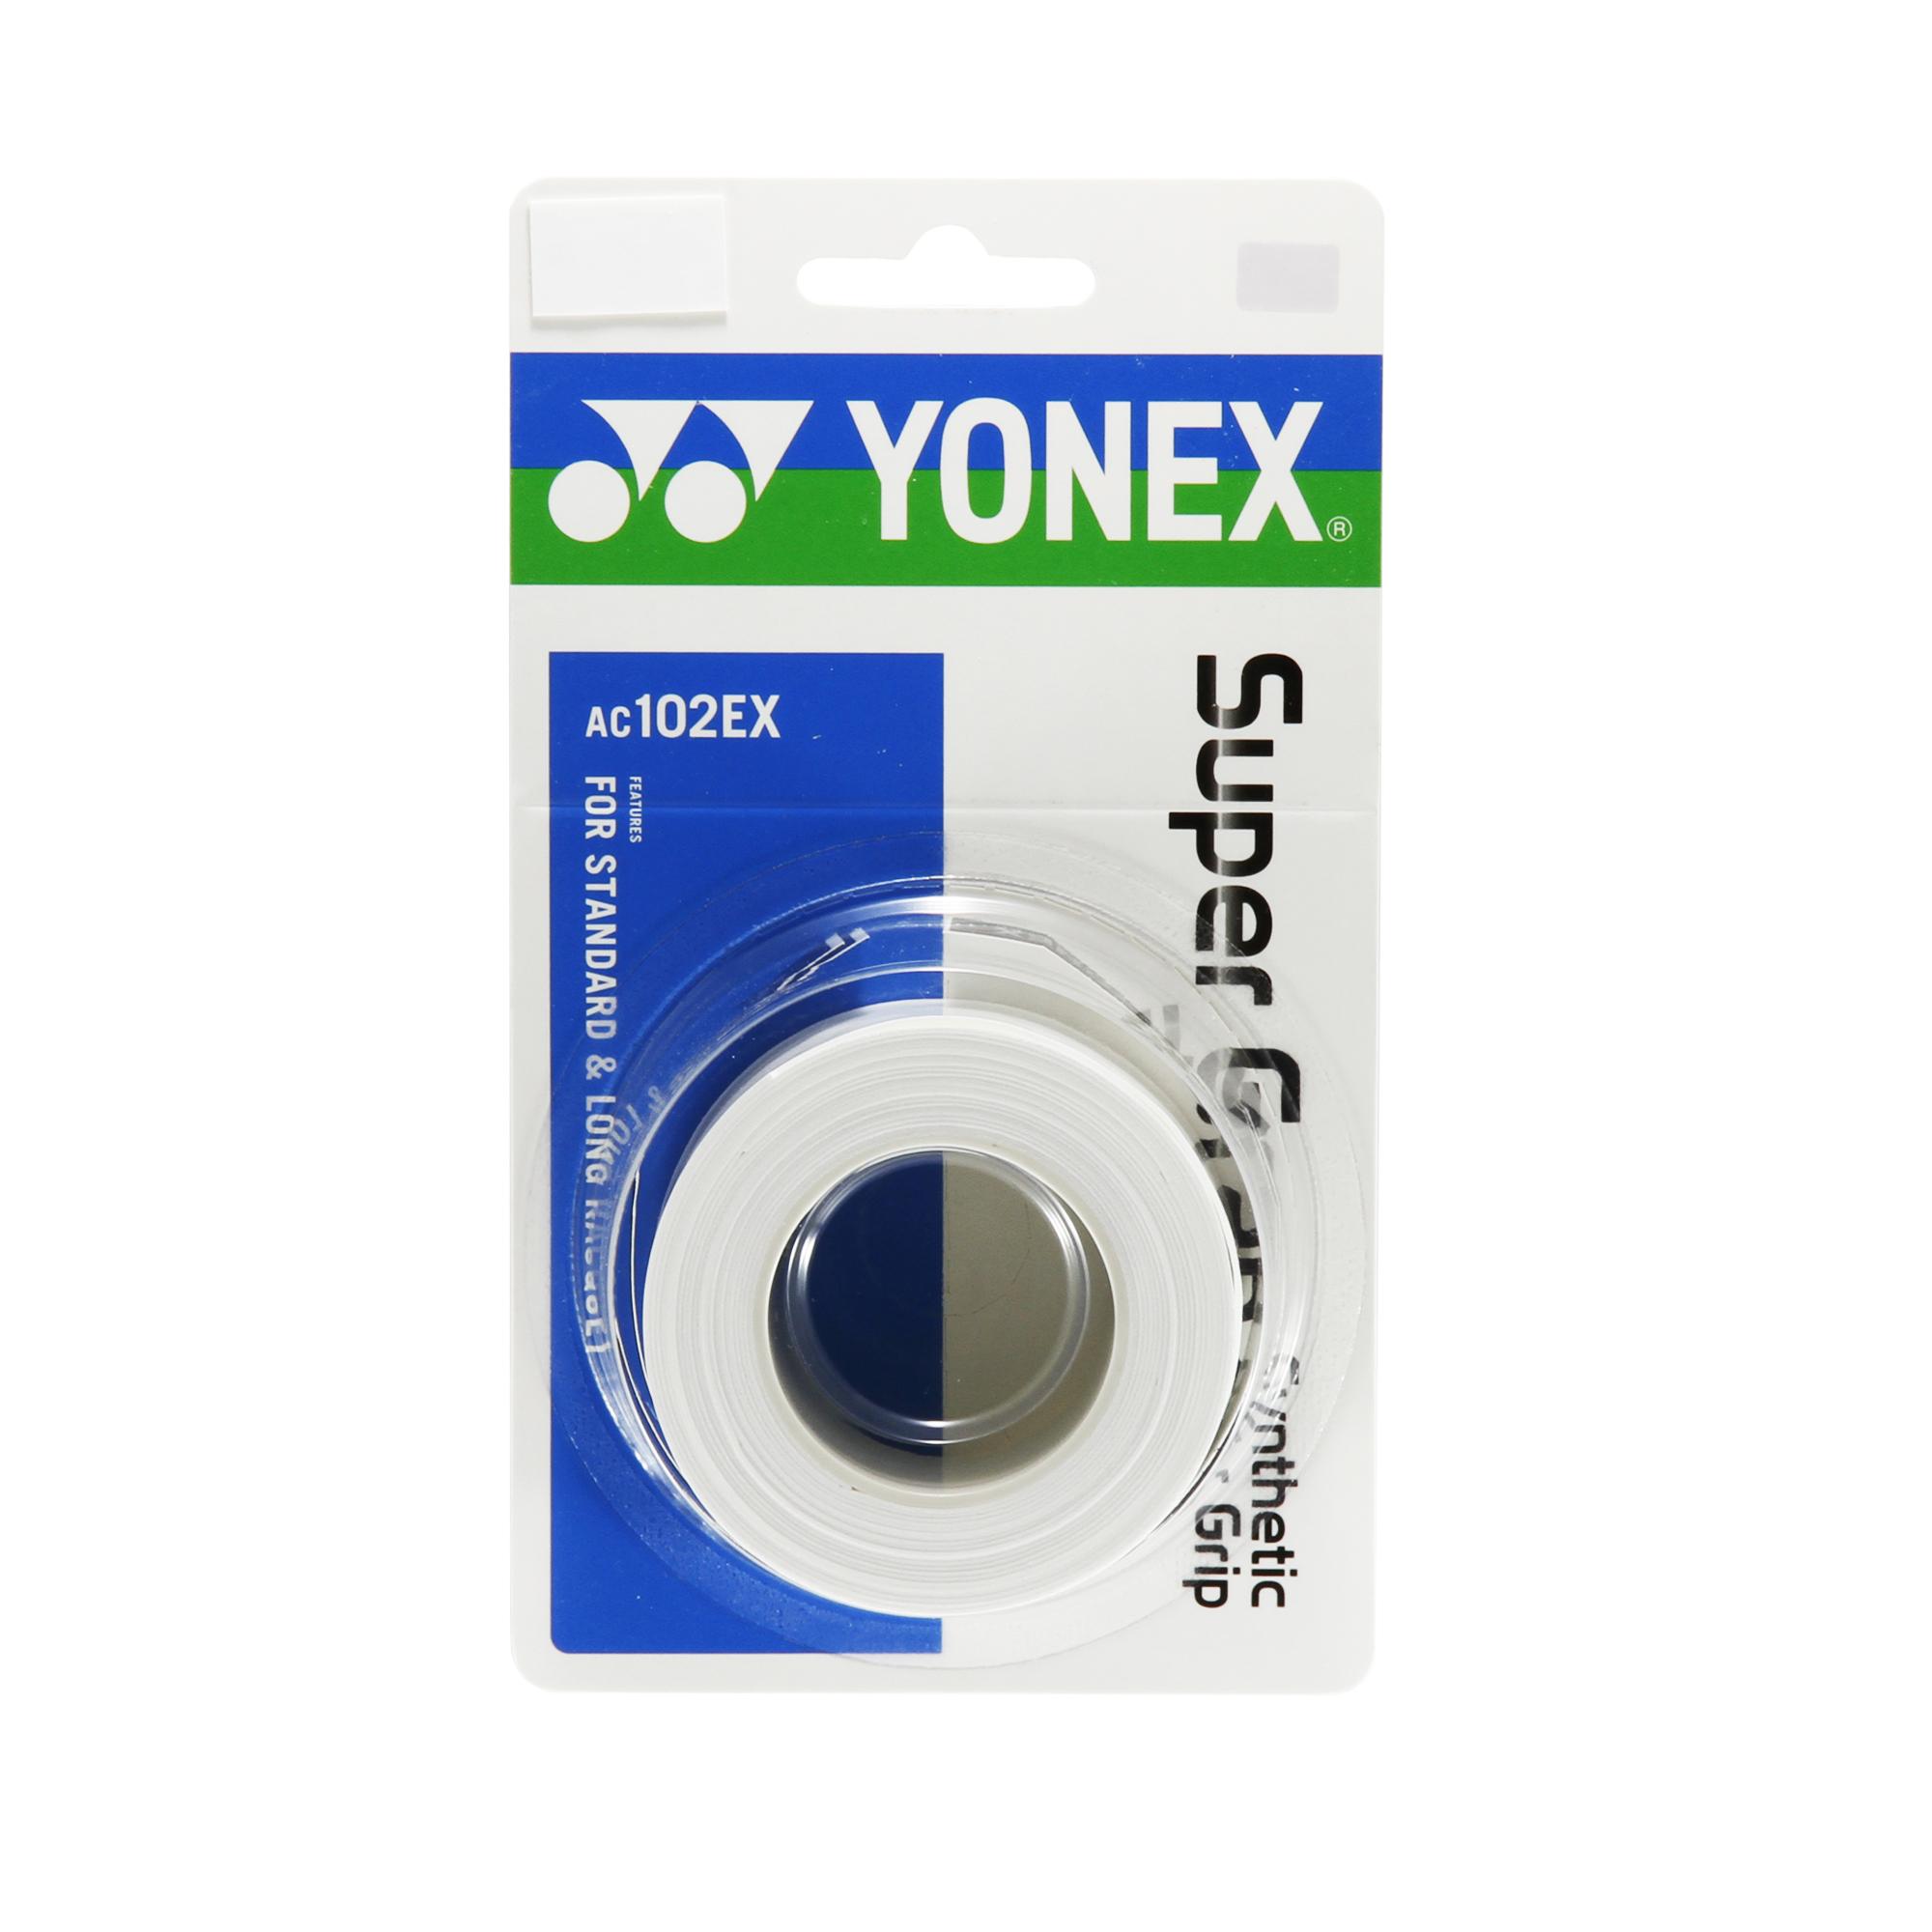 พันด้าม Yonex รุ่น AC 102 EX  (3 grips)